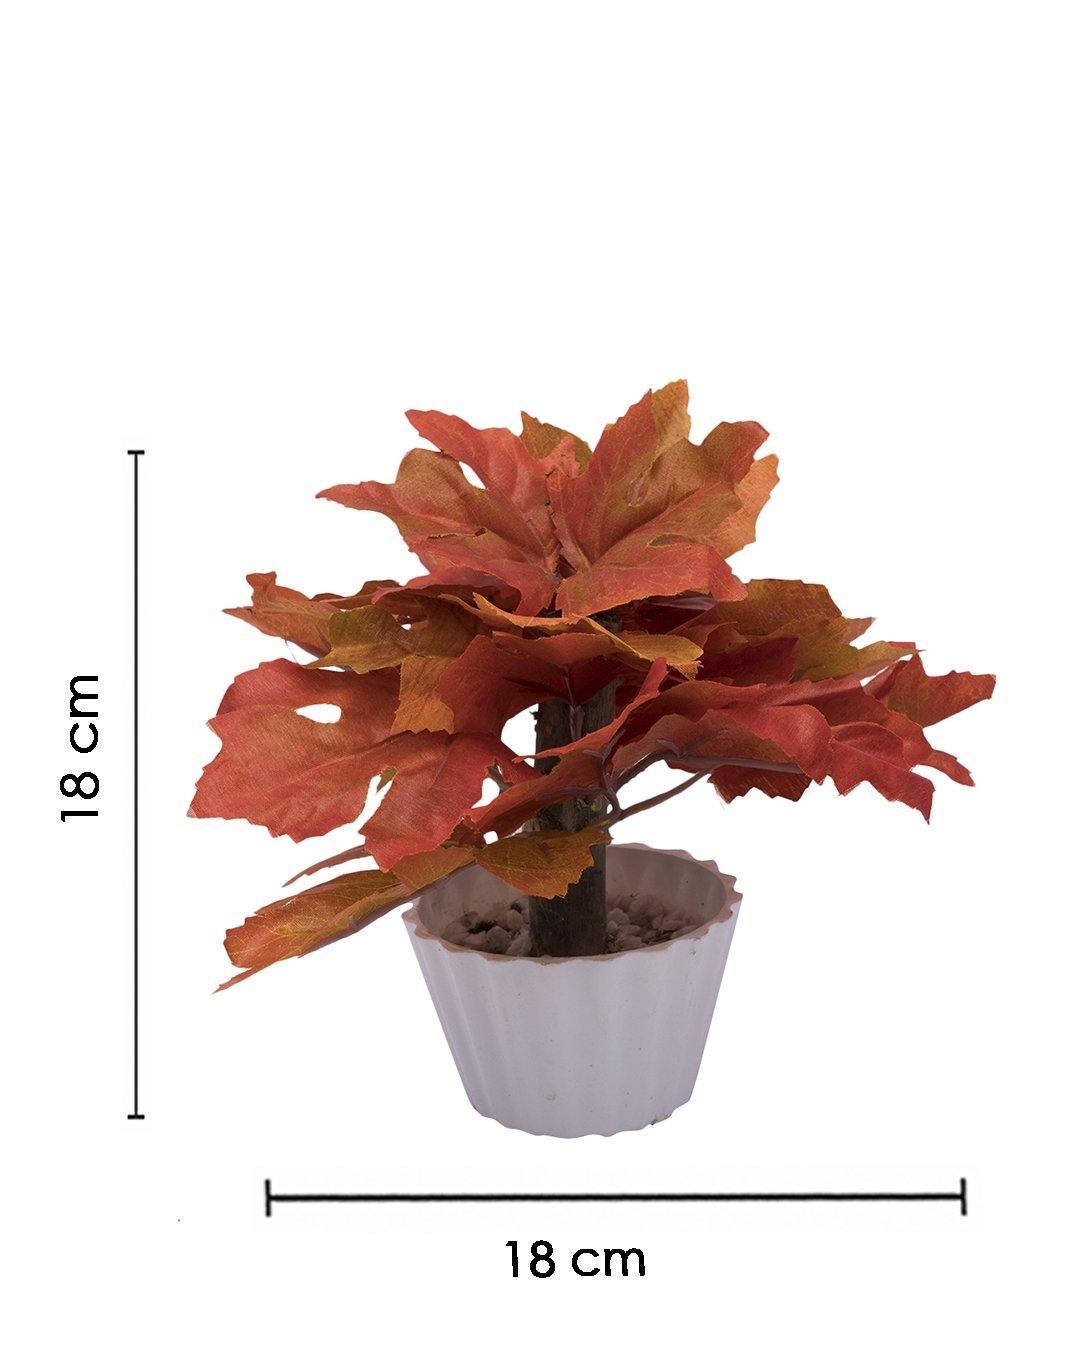 Artificial Plant, Mini Canadian & Mini Ficus Arrangement with White Pot, Orange, Plastic Plant - MARKET 99